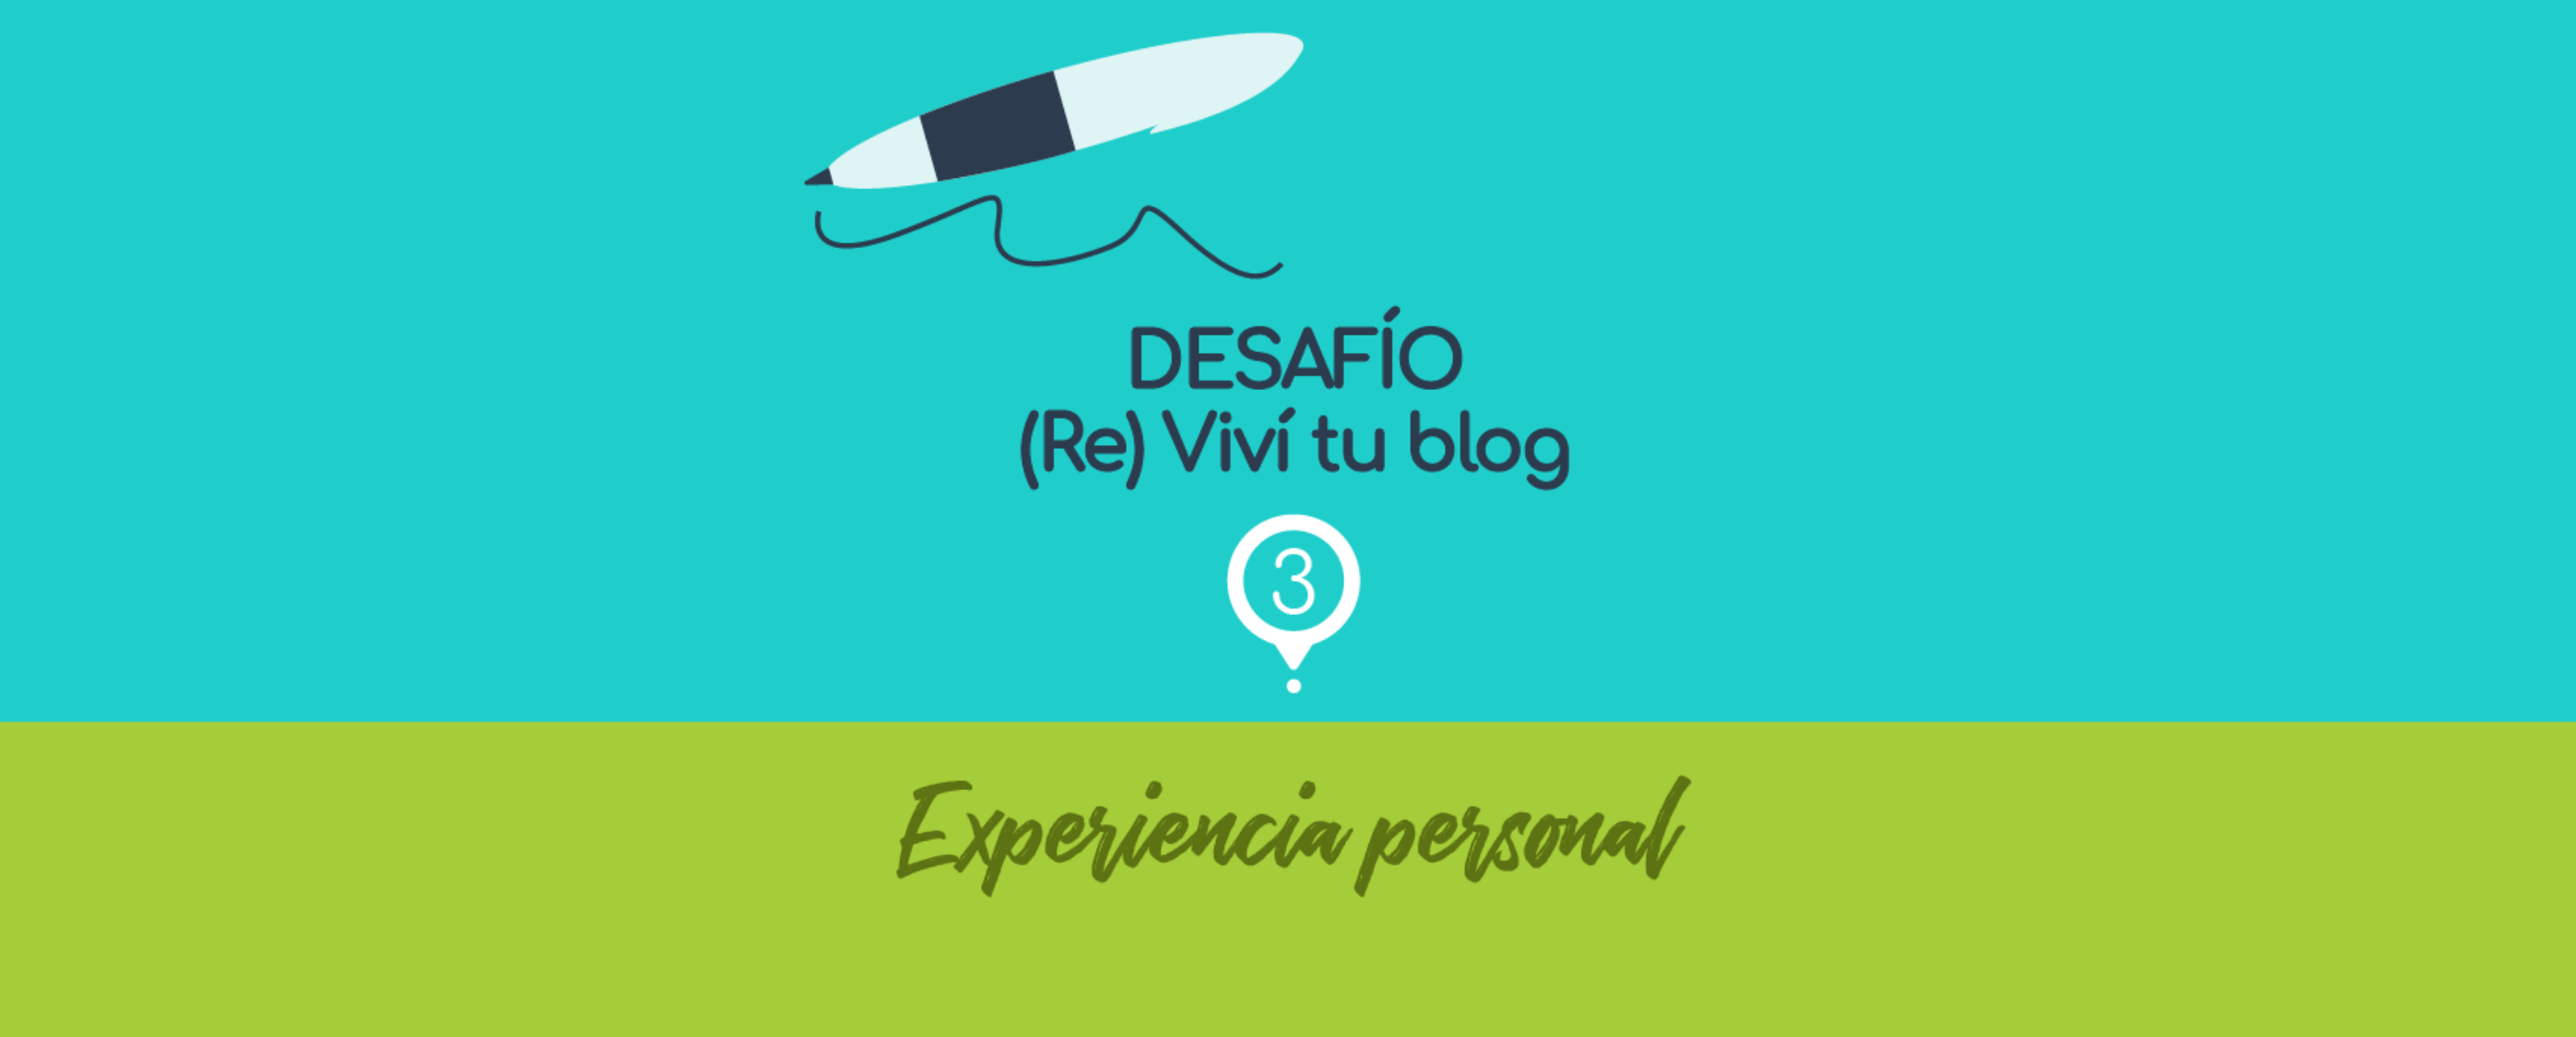 – 3 – (Re) Viví tu blog: experiencia personal.